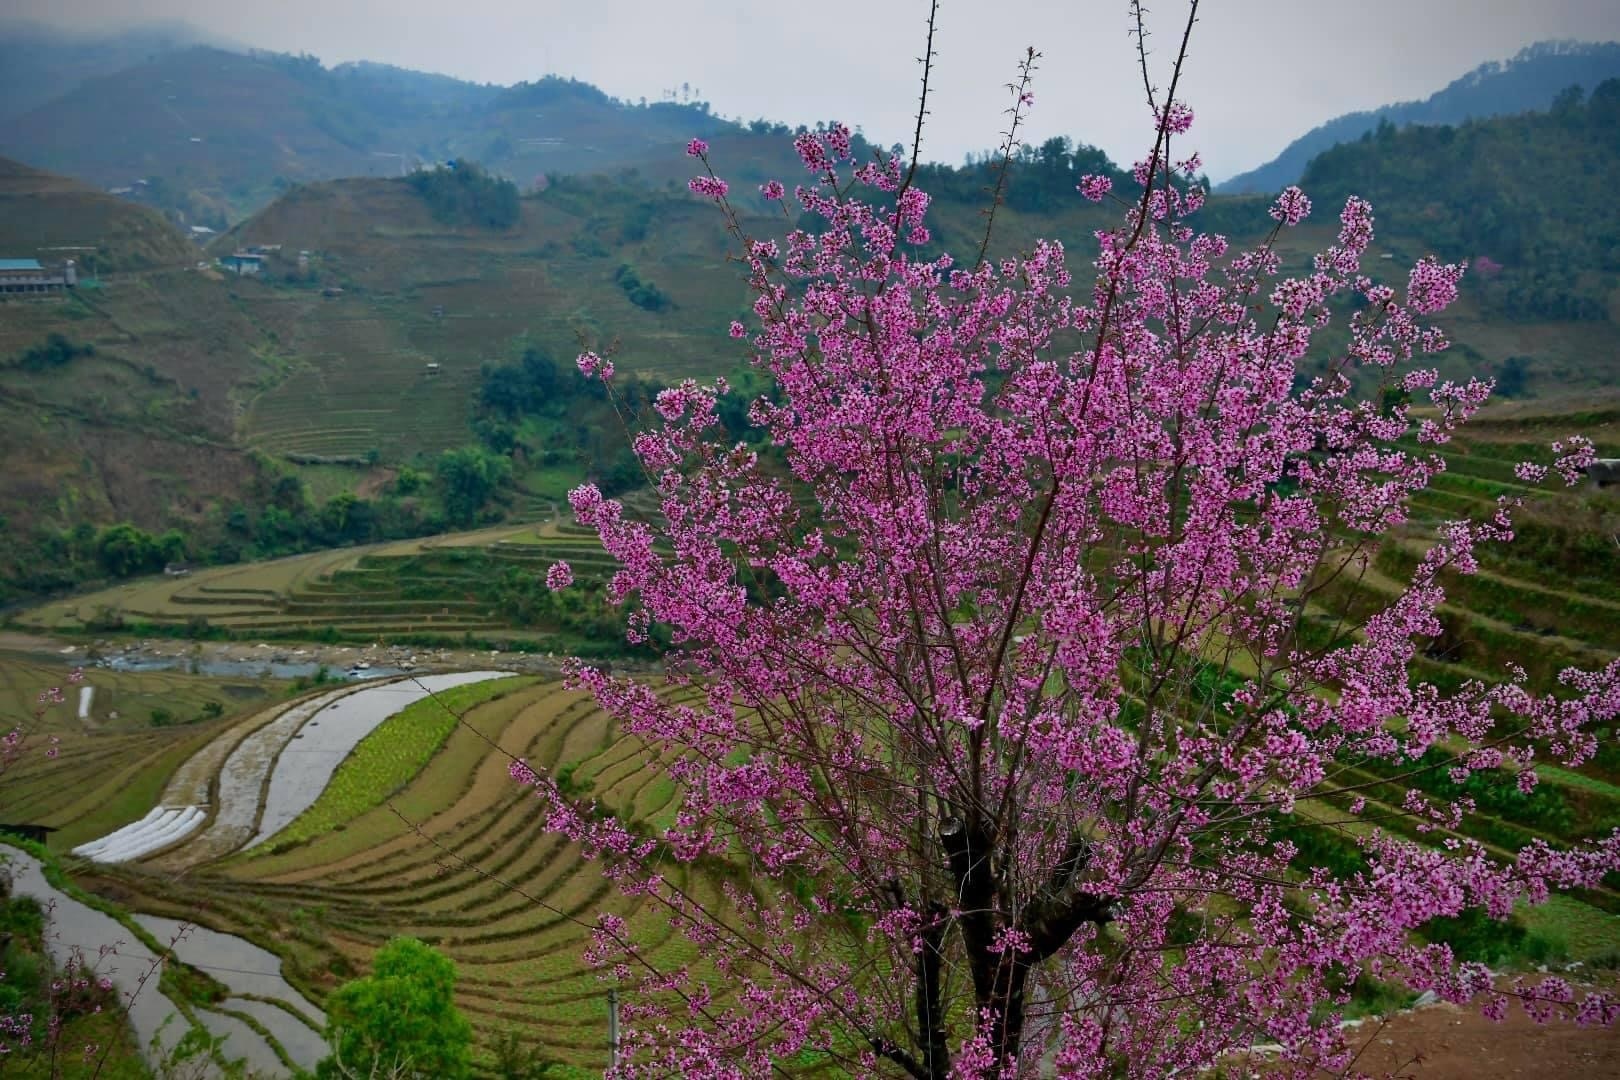 Chiêm ngưỡng sắc hoa tớ dày nhuộm hồng núi rừng Mù Cang Chải - Ảnh 12.